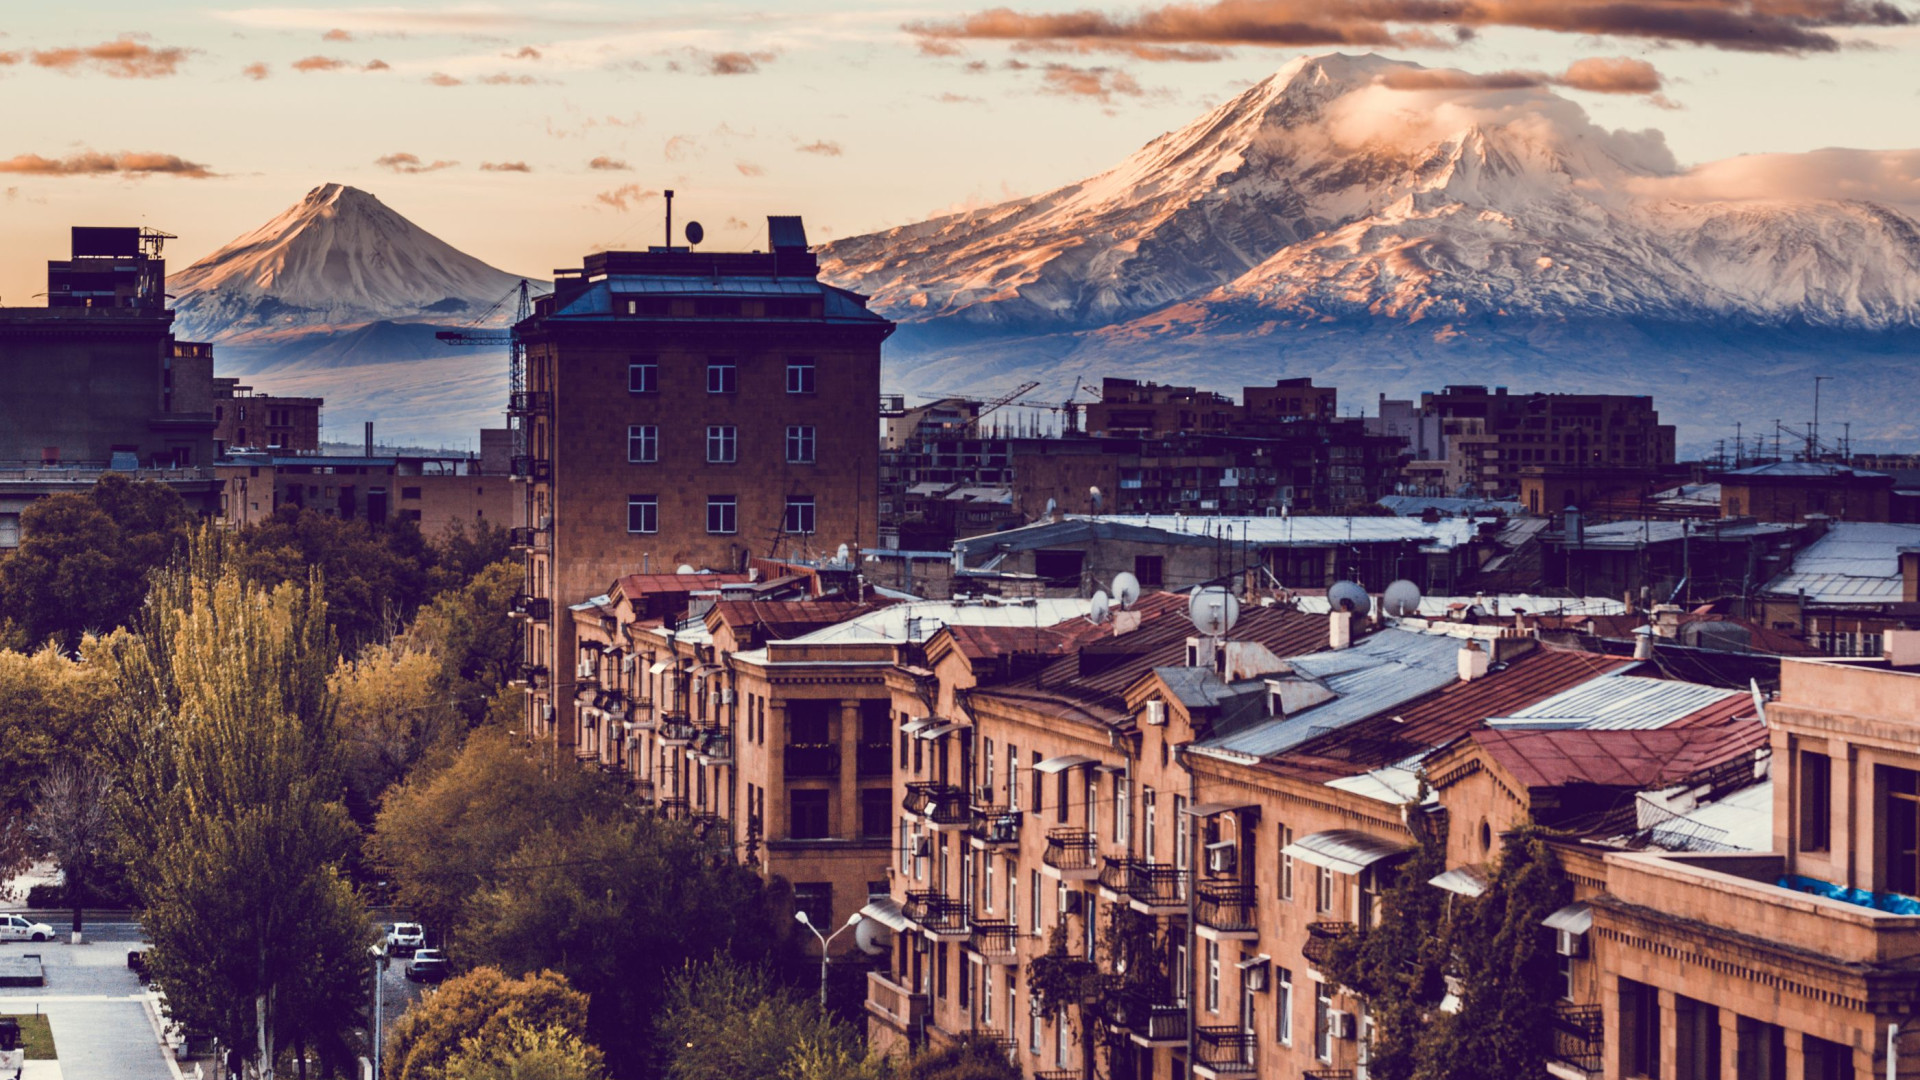 Armênia: aventure-se por esse destino sagrado e de paisagens incríveis